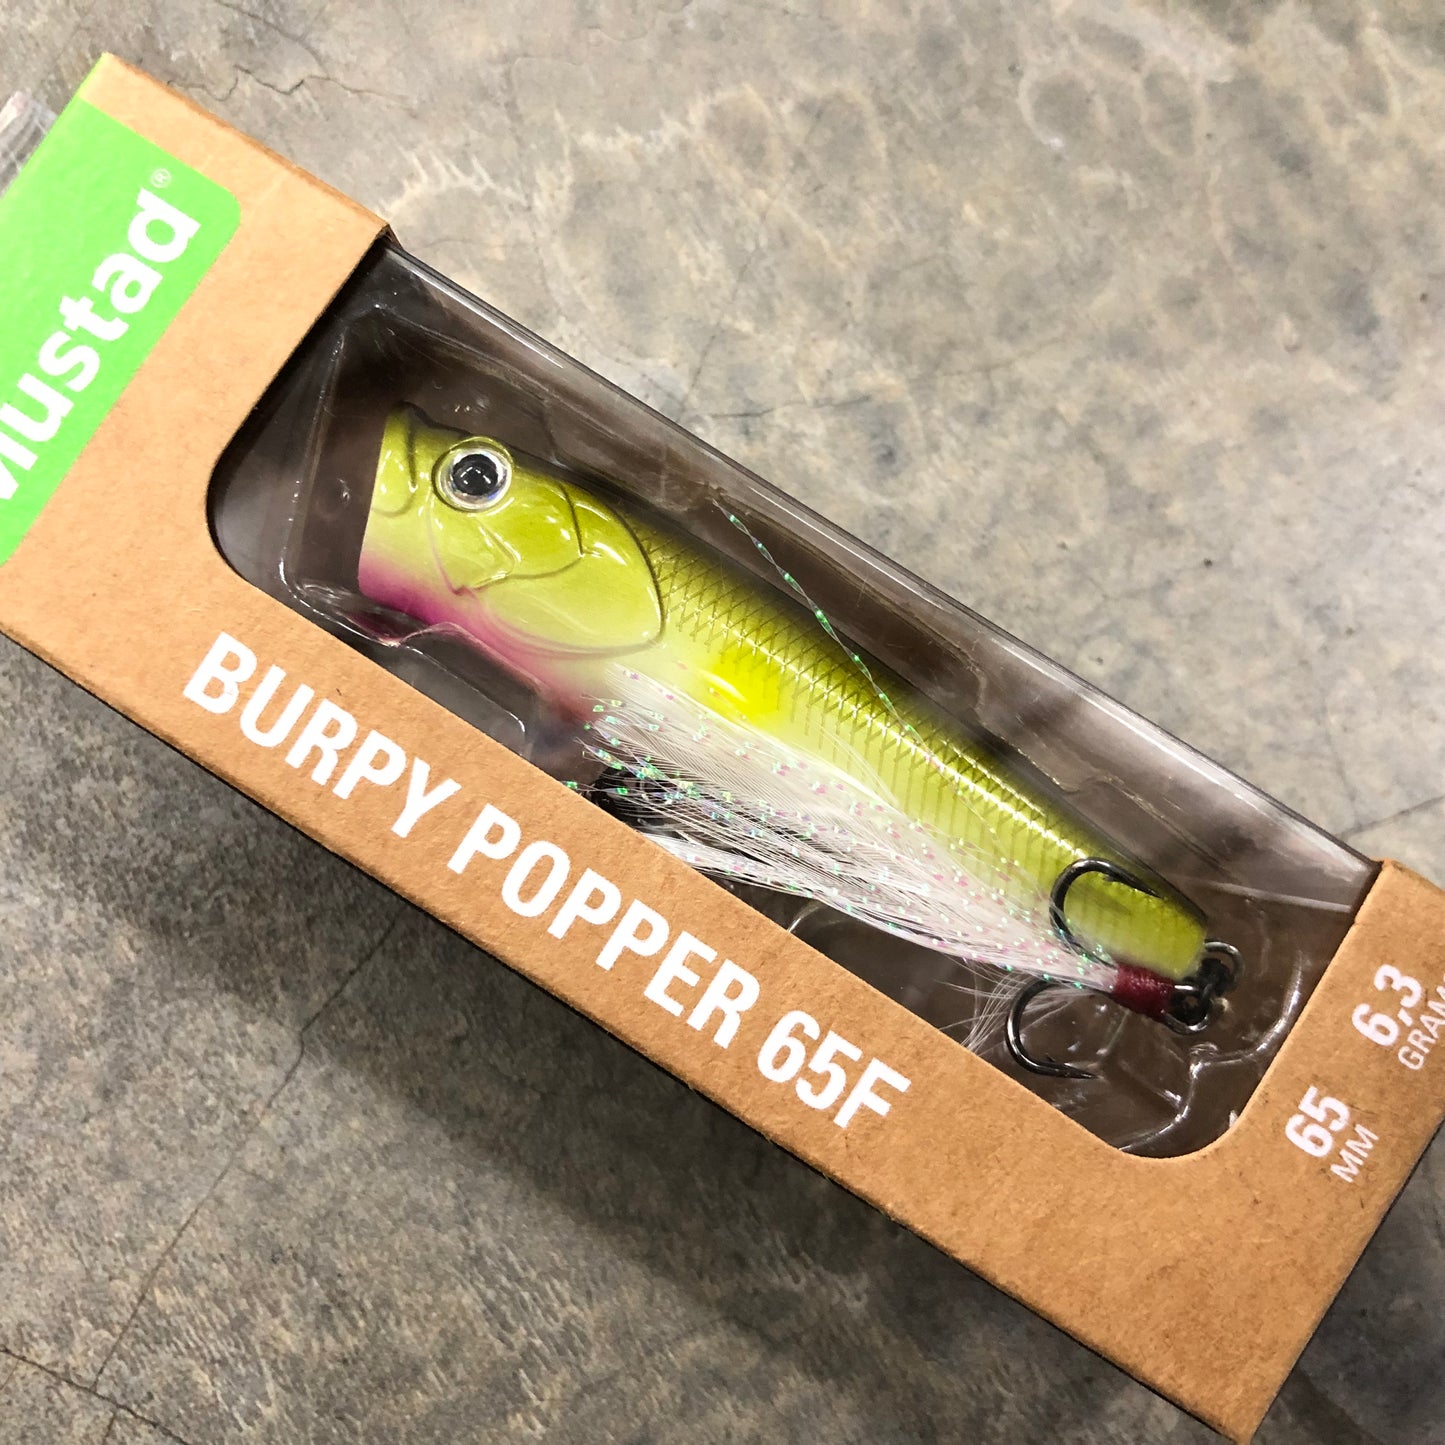 Burpy Popper 65F